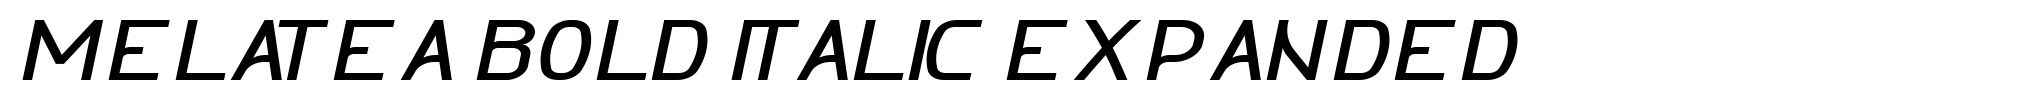 Melatea Bold Italic Expanded image